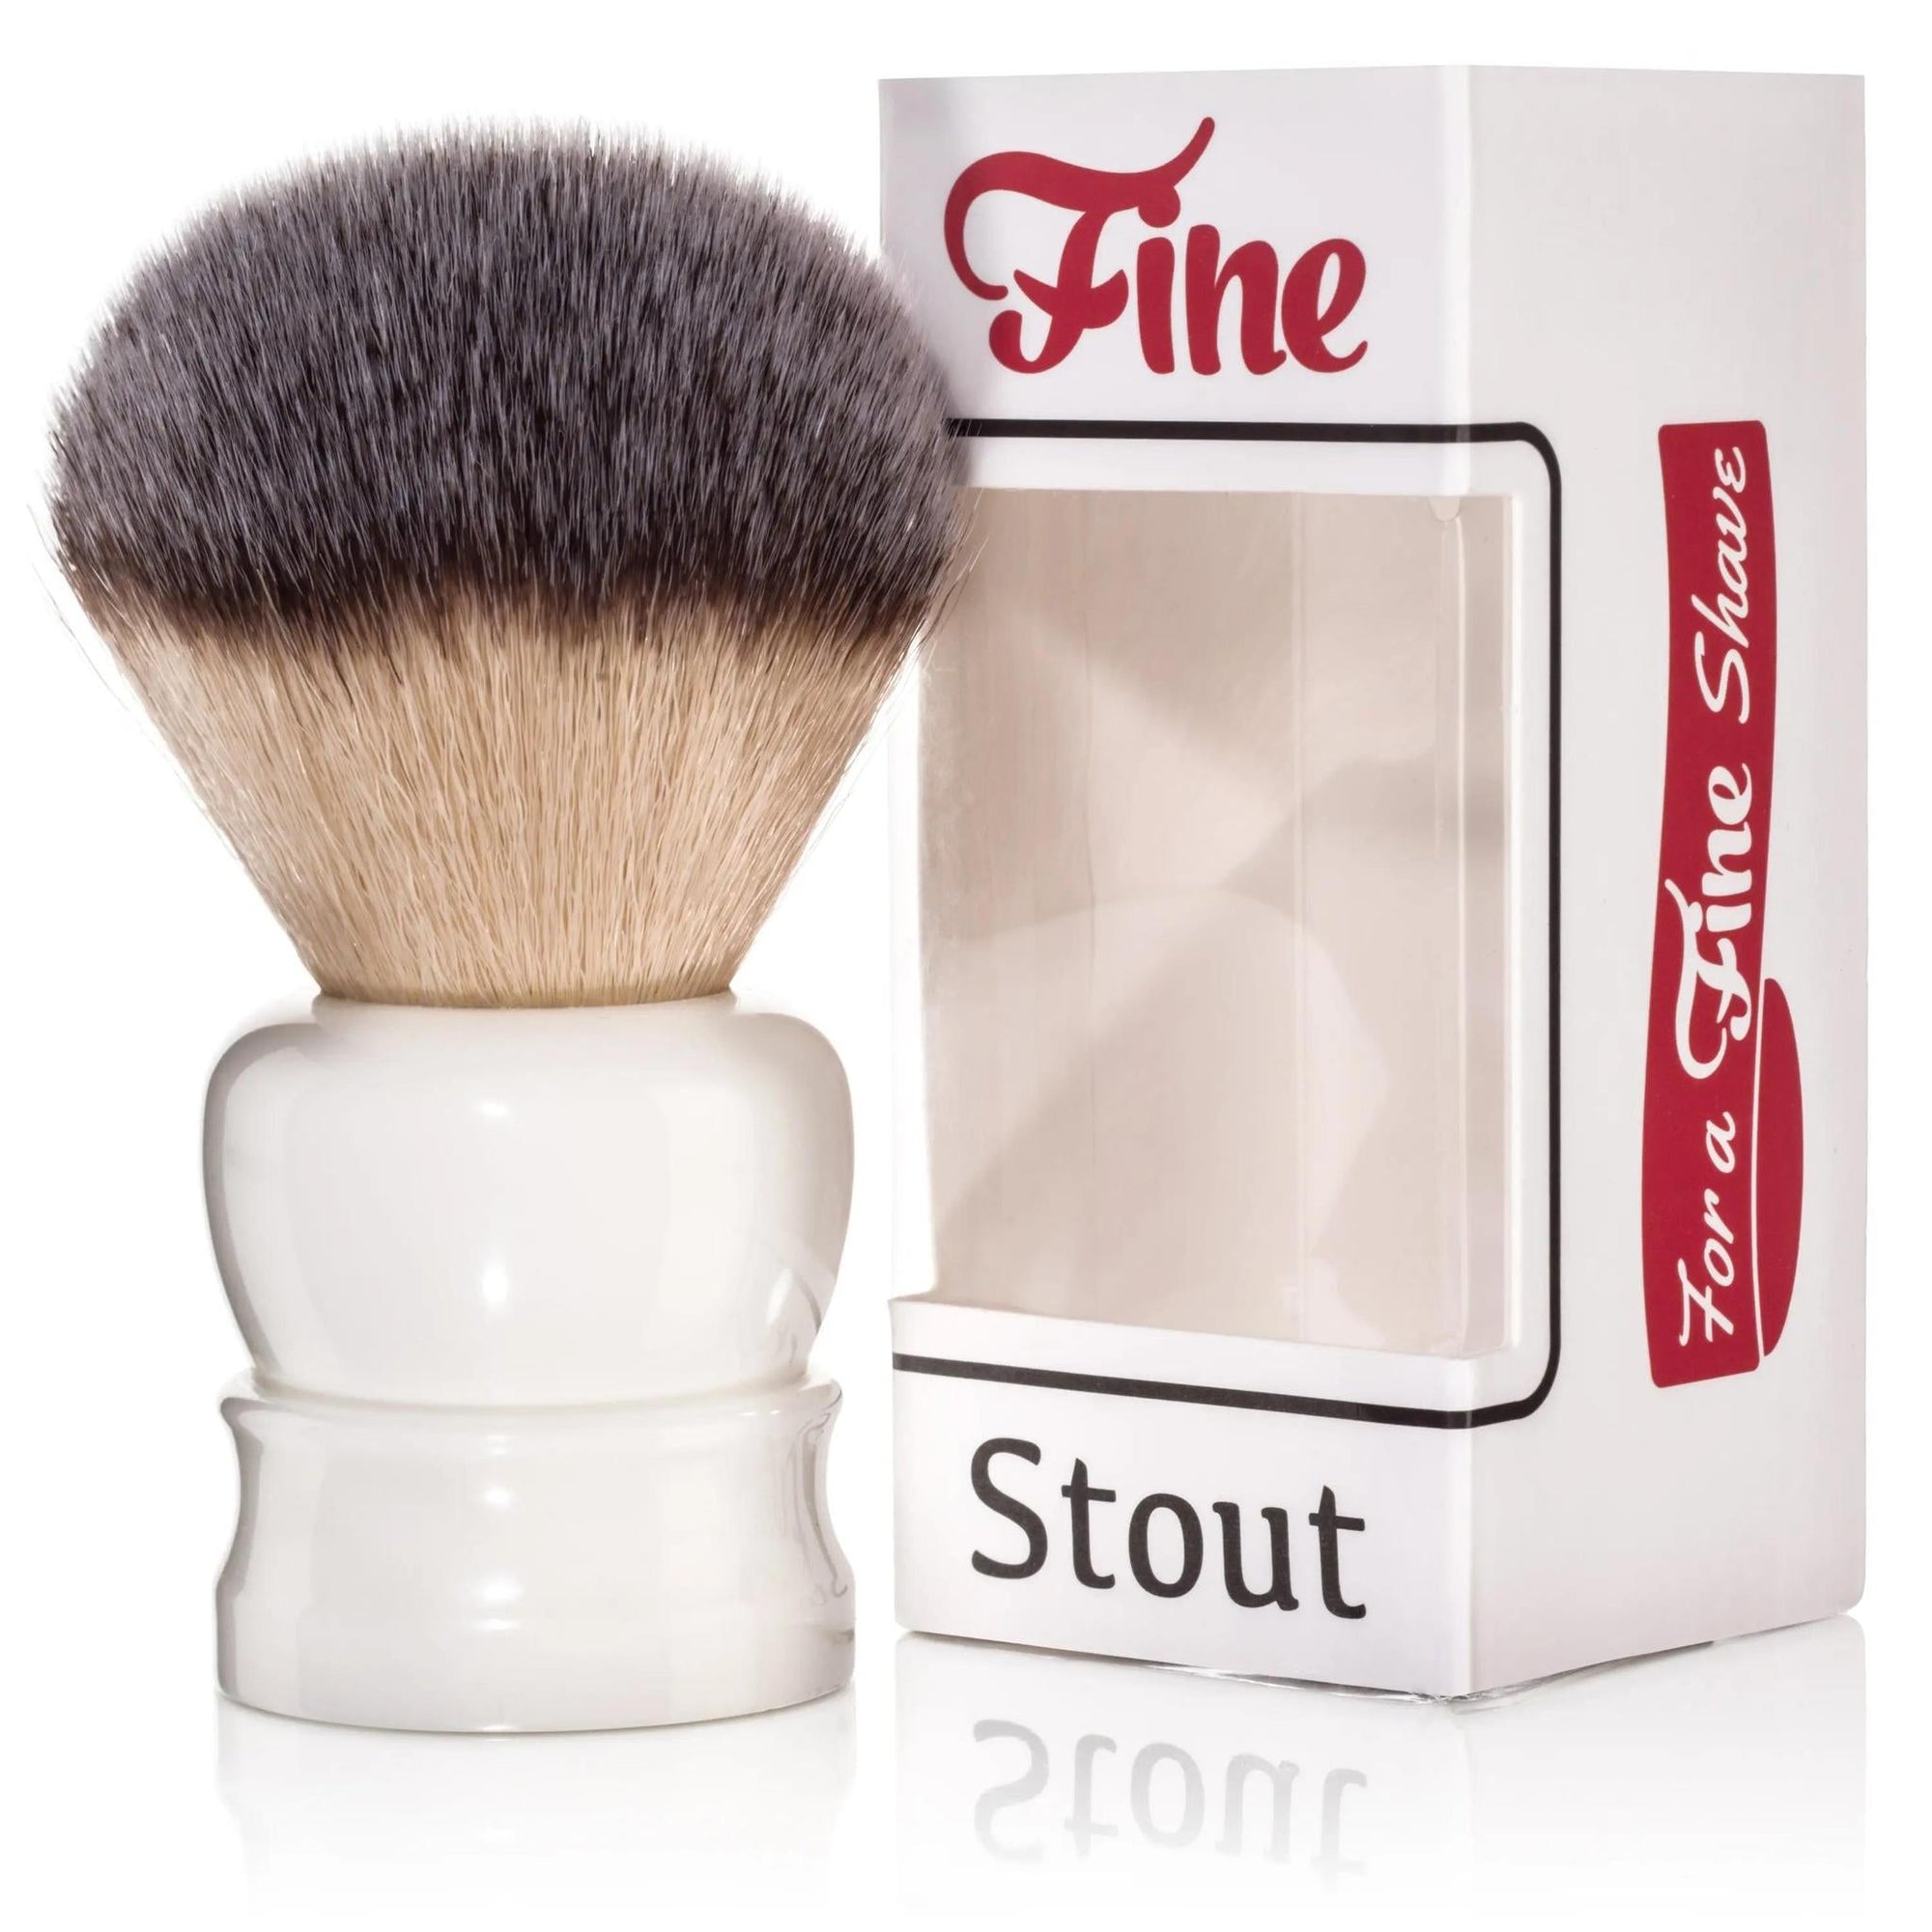 Fine Stout Shave Brush | White